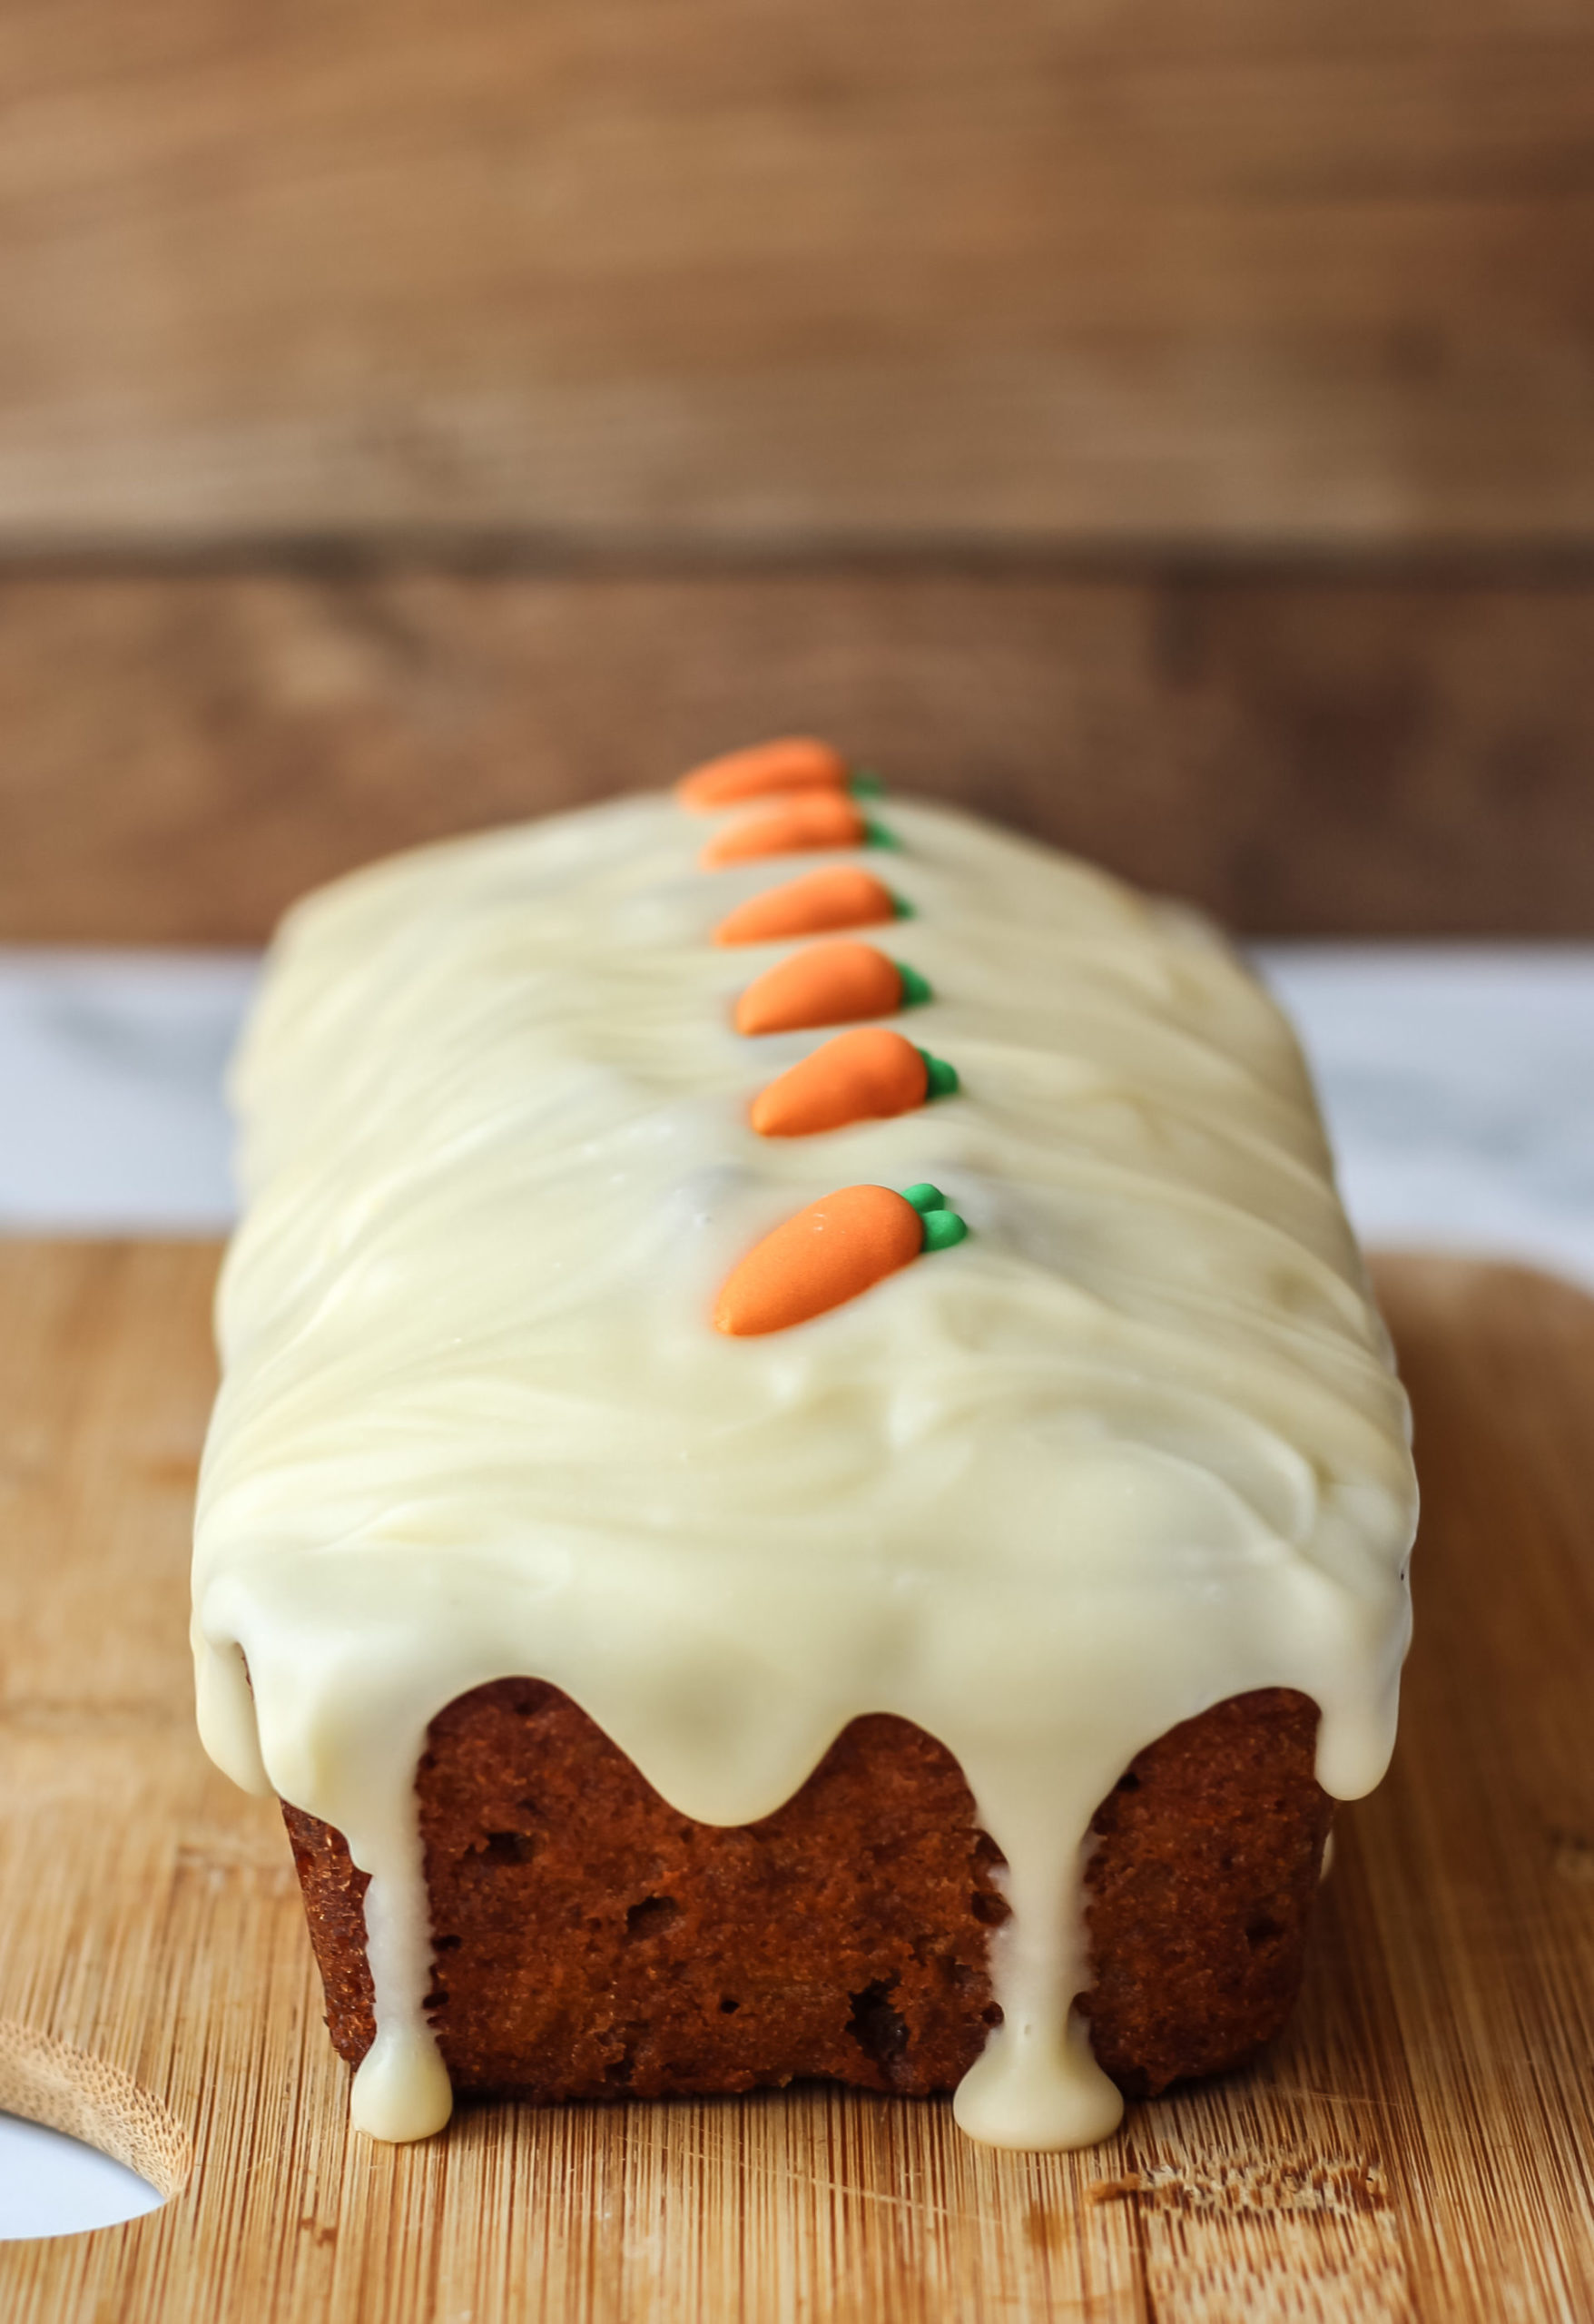 Carrot Loaf Cake - Baker Jo's Simple, Easy Carrot Cake Loaf